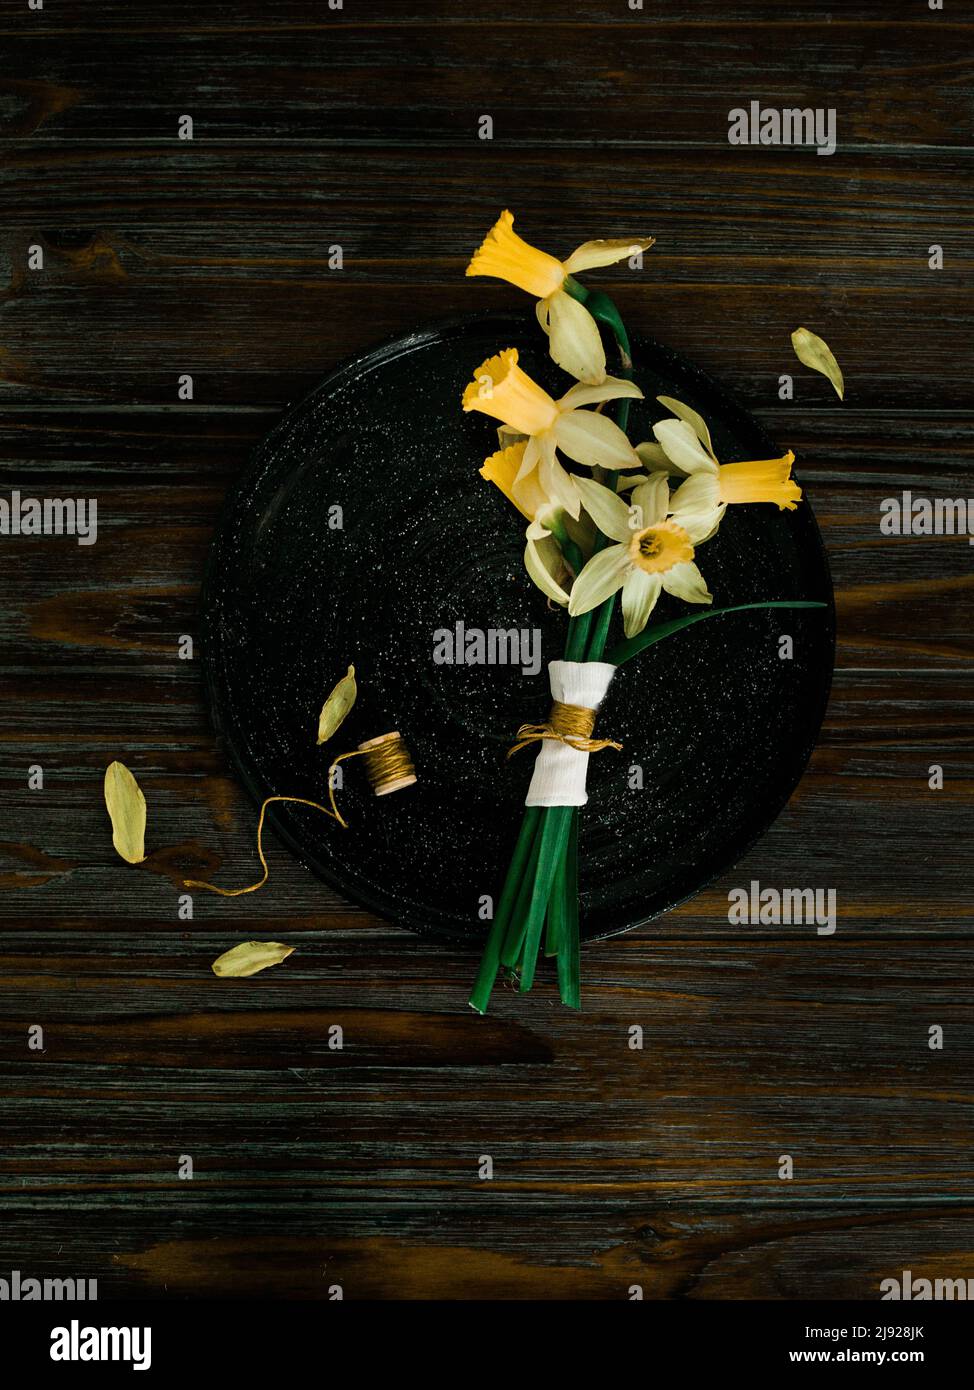 Daffodil-Bouquet auf einem Holztisch in stimmungsvoller Beleuchtung angeordnet Stockfoto